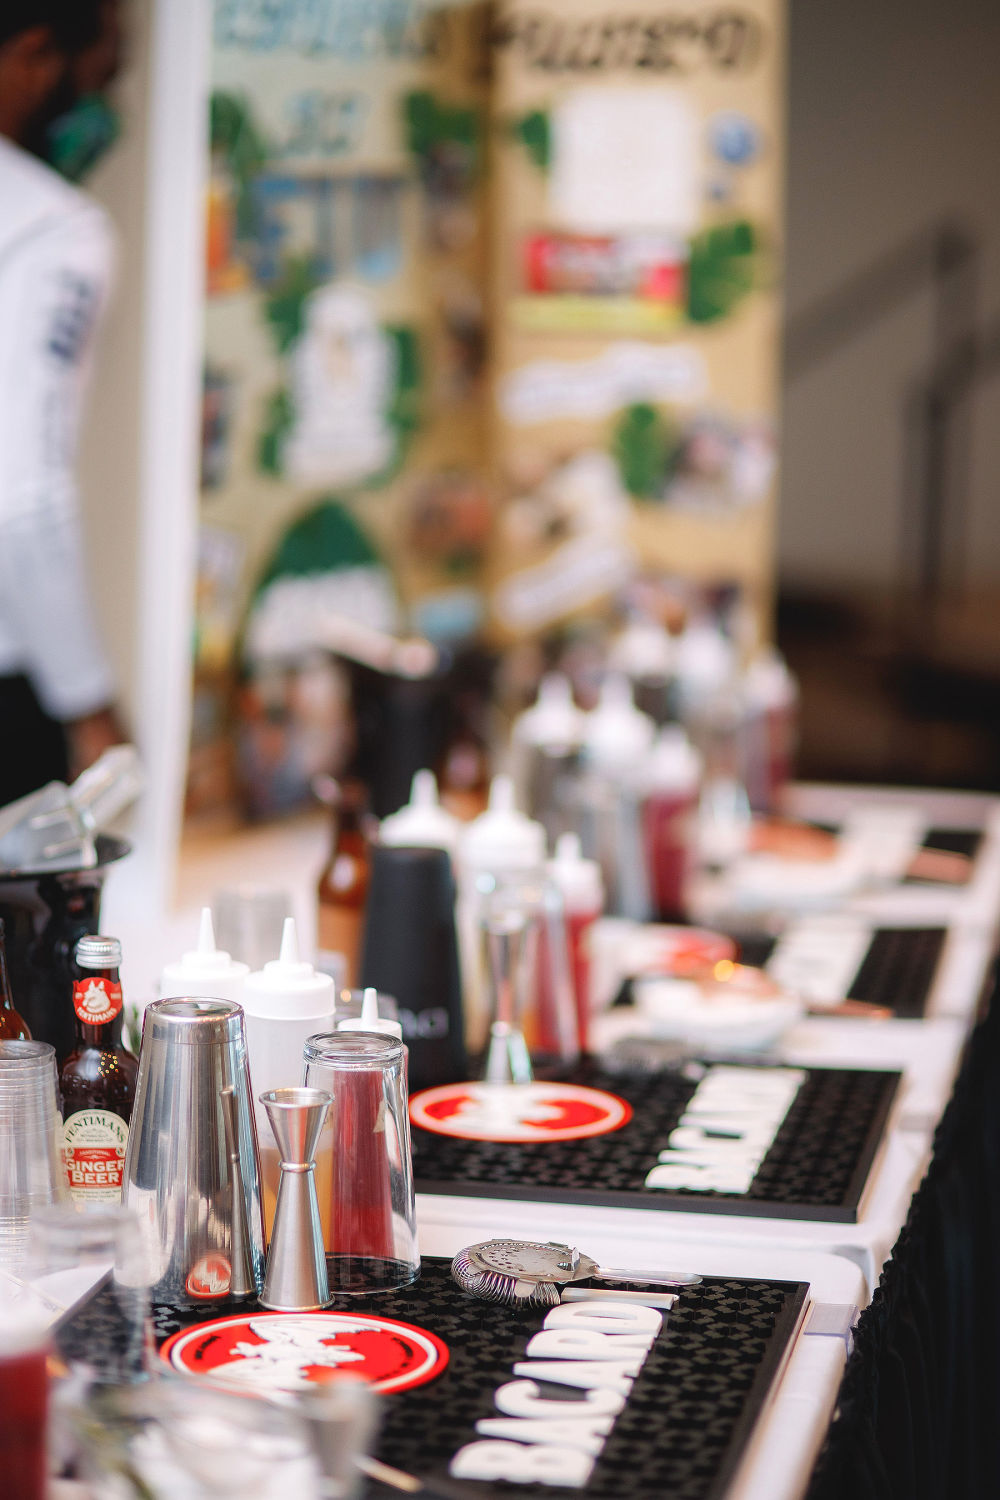 Активации Bacardi, идеальное дополнение к вашему пакету мероприятий, позволяют посетителям попрактиковаться в своих навыках бармена, используя множество доступных рецептов, включая безалкогольные коктейли.